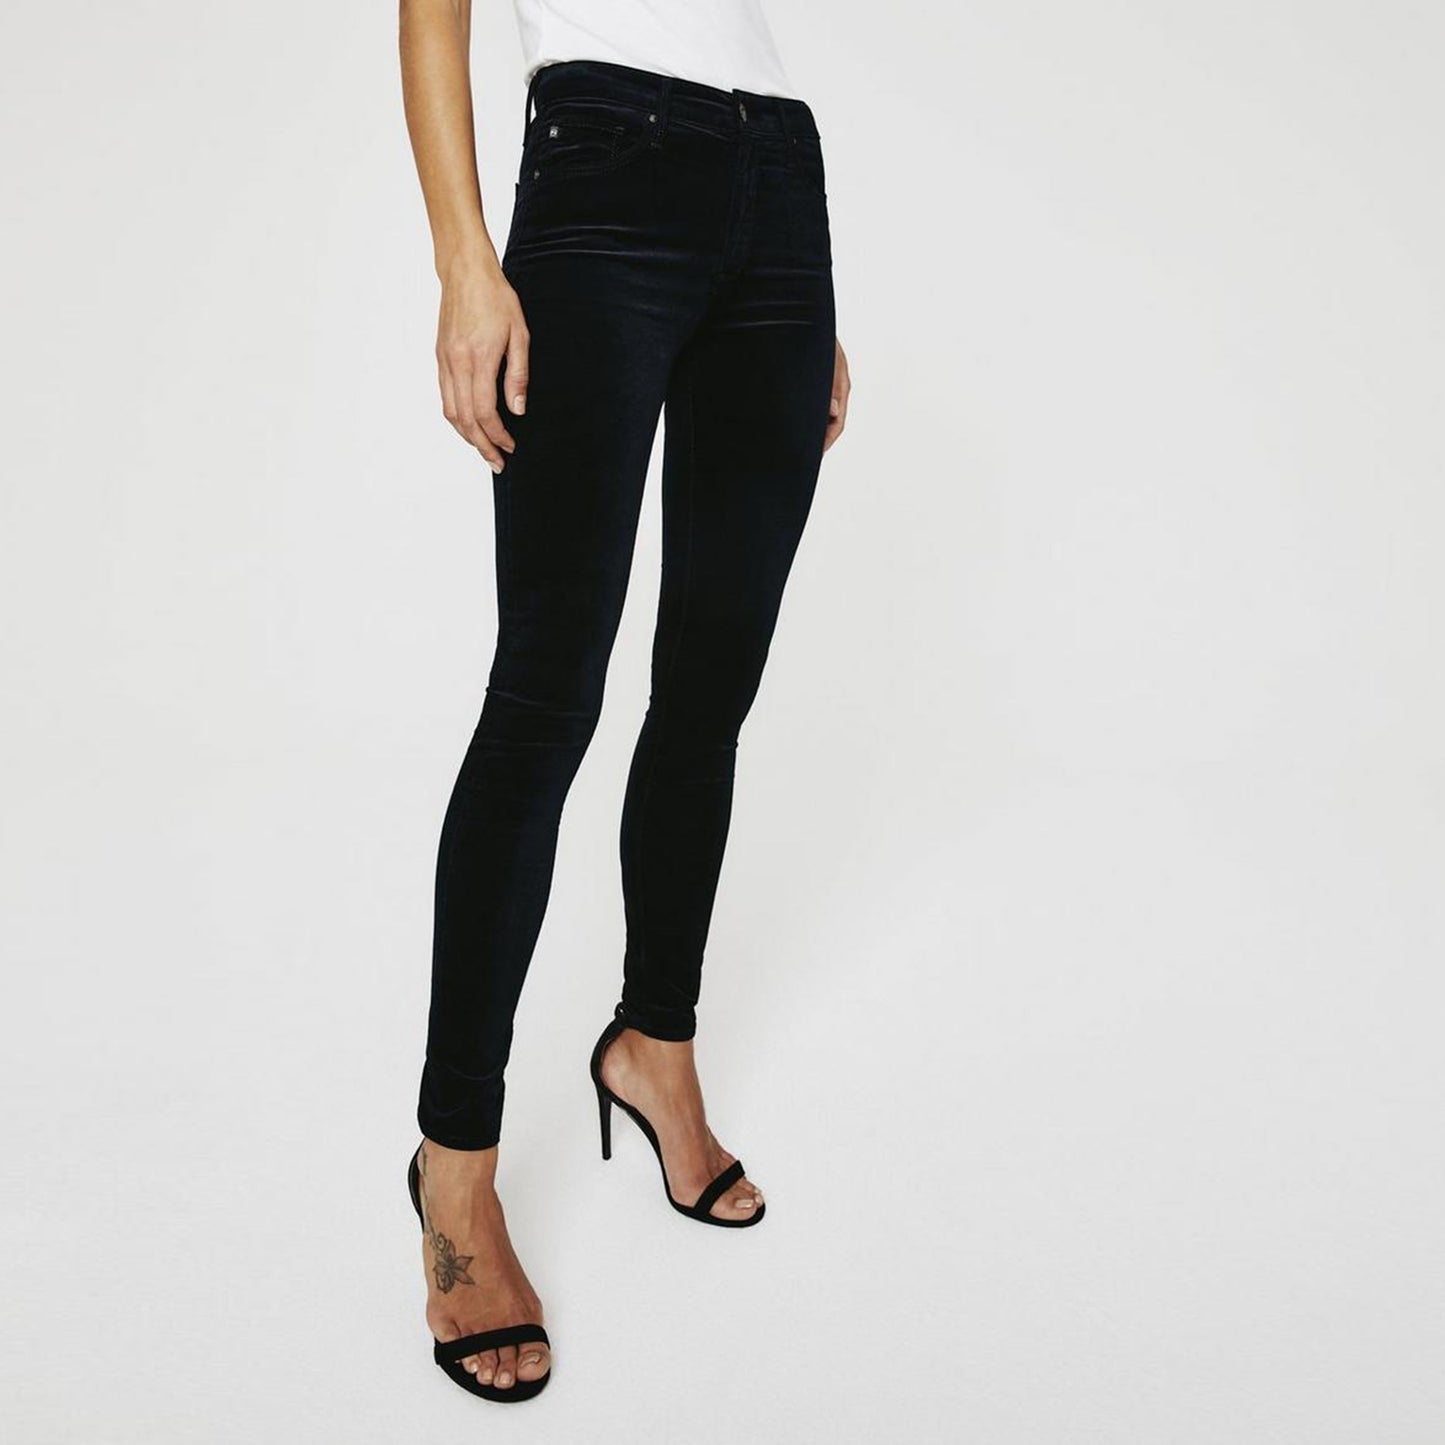 ag the farrah high rise skinny black velvet pants - size 26